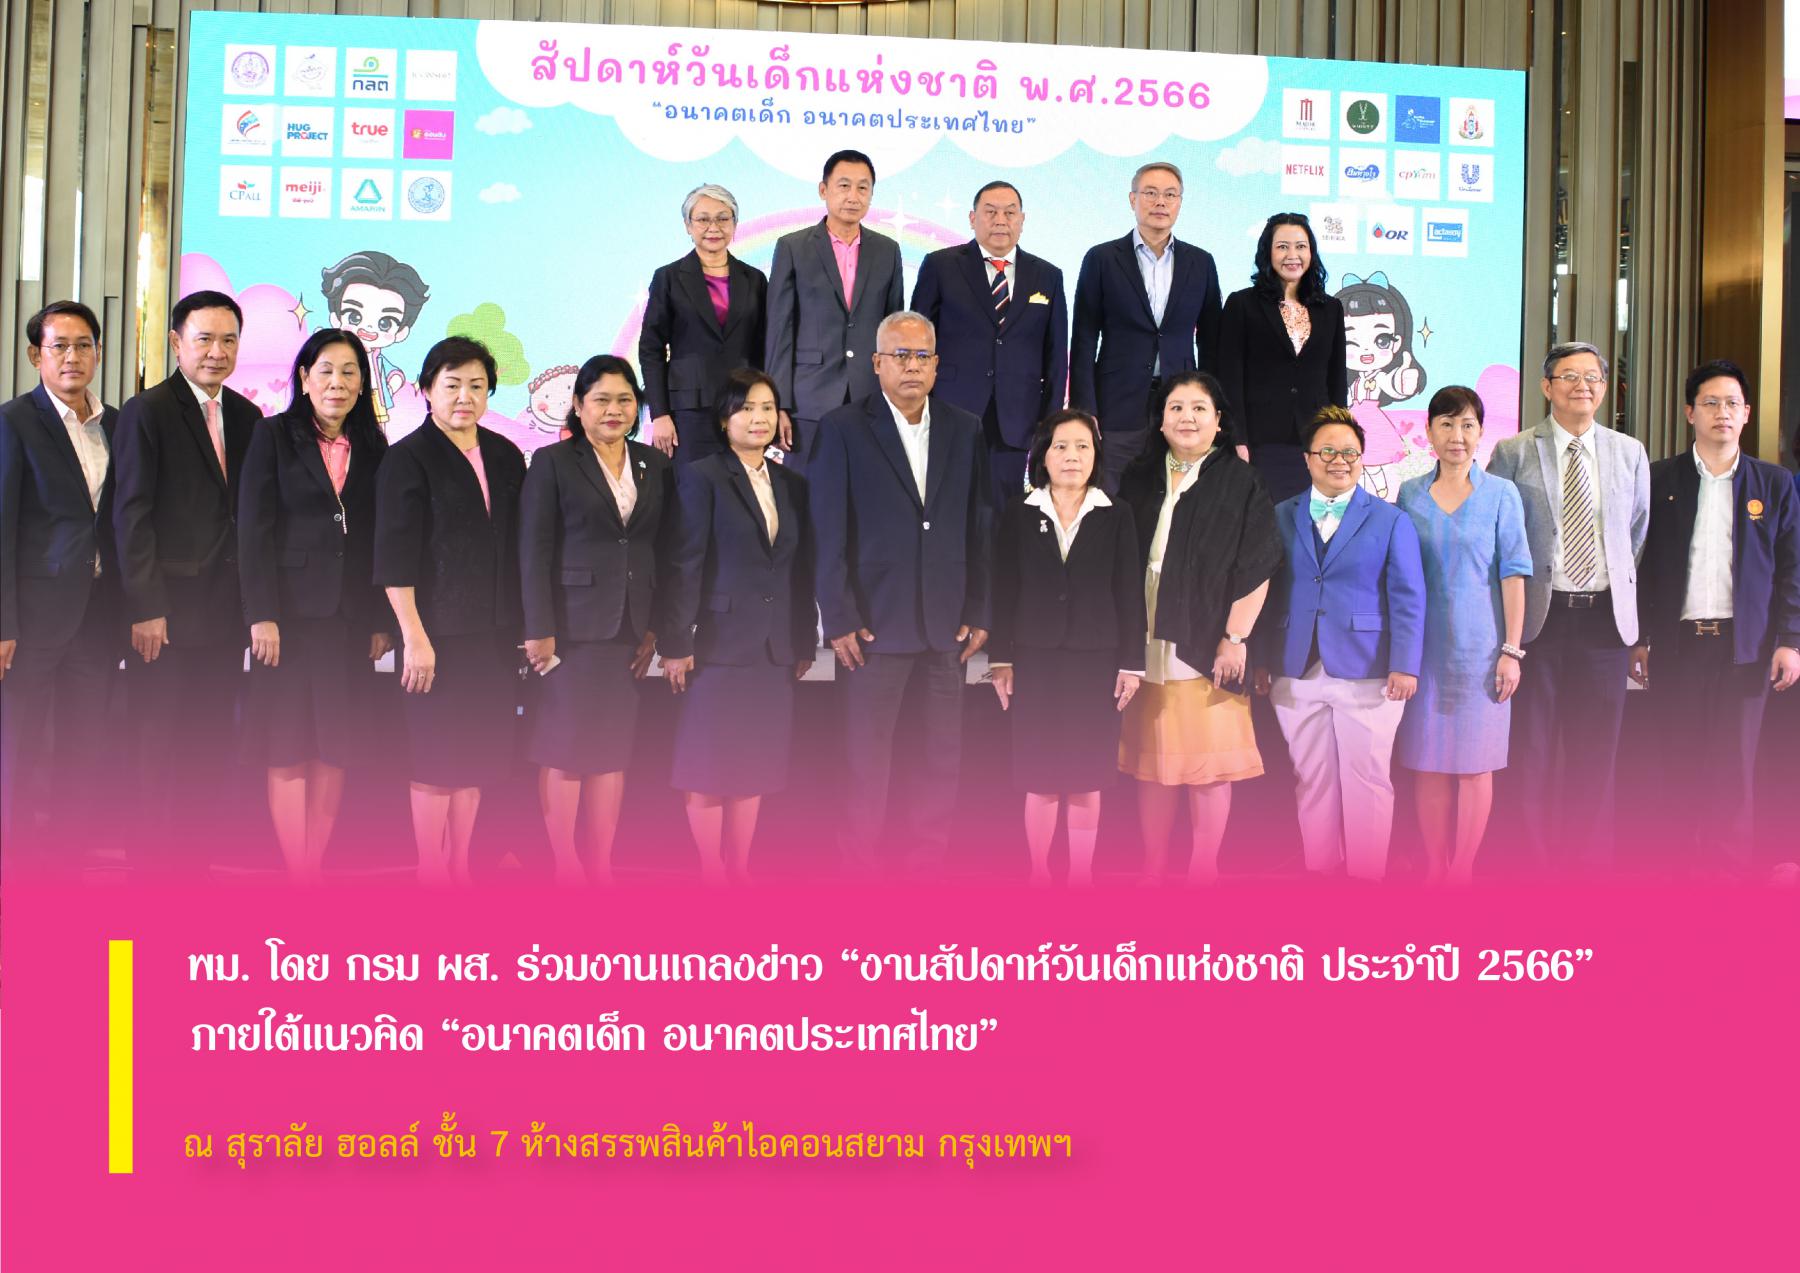 พม. โดย กรม ผส. ร่วมงานแถลงข่าว “งานสัปดาห์วันเด็กแห่งชาติ ประจำปี 2566” ภายใต้แนวคิด “อนาคตเด็ก อนาคตประเทศไทย”